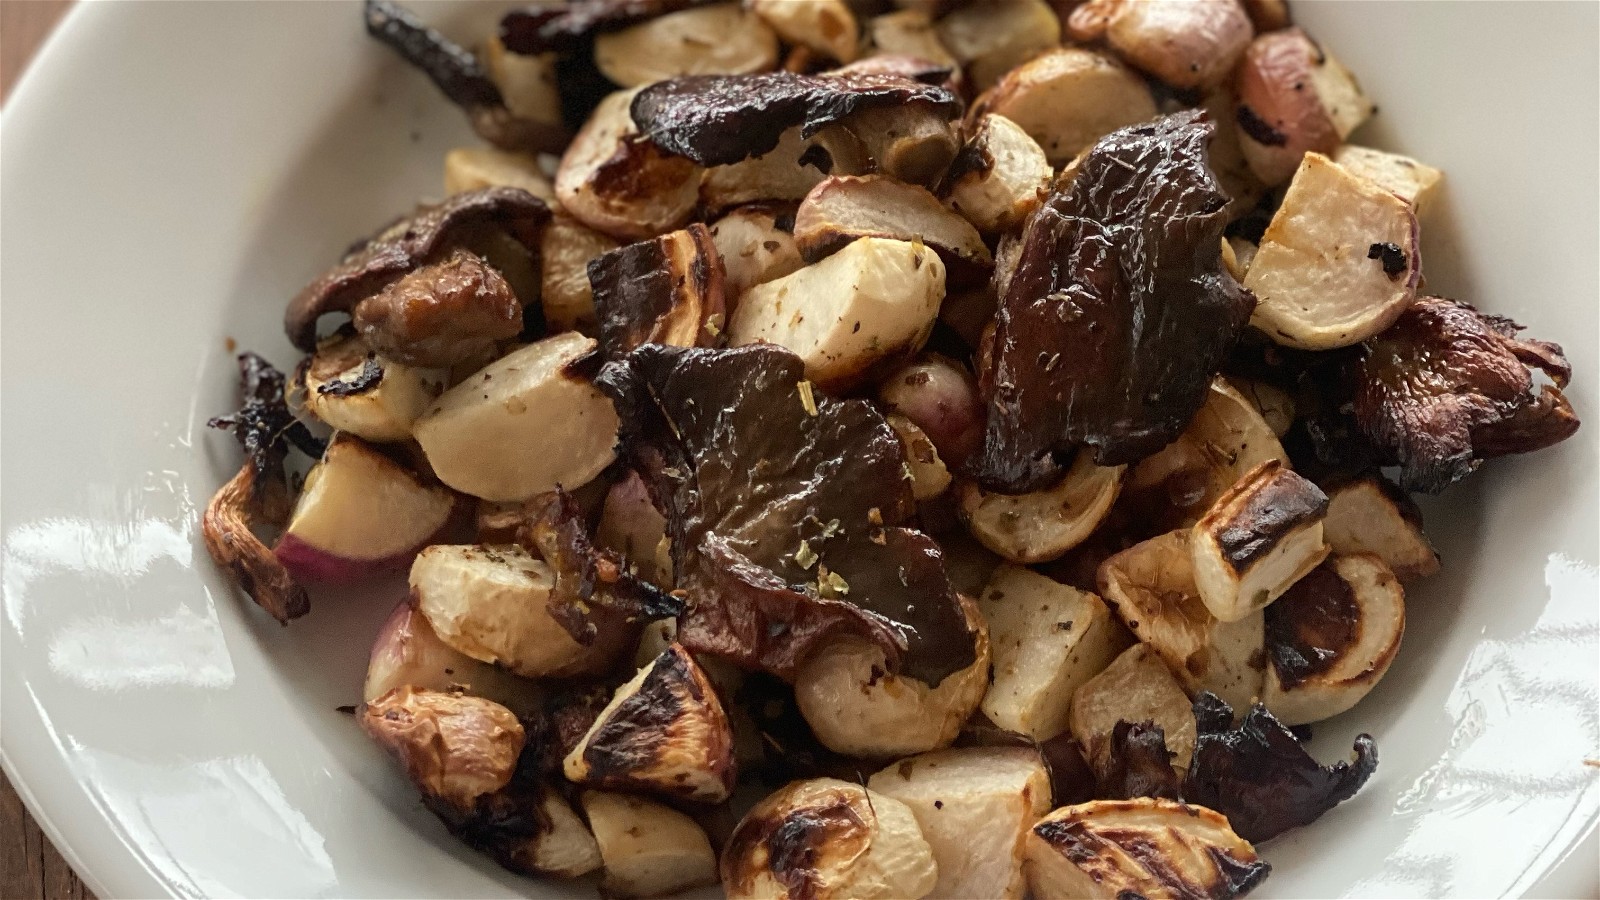 Image of Roasted Turnips and Mushrooms